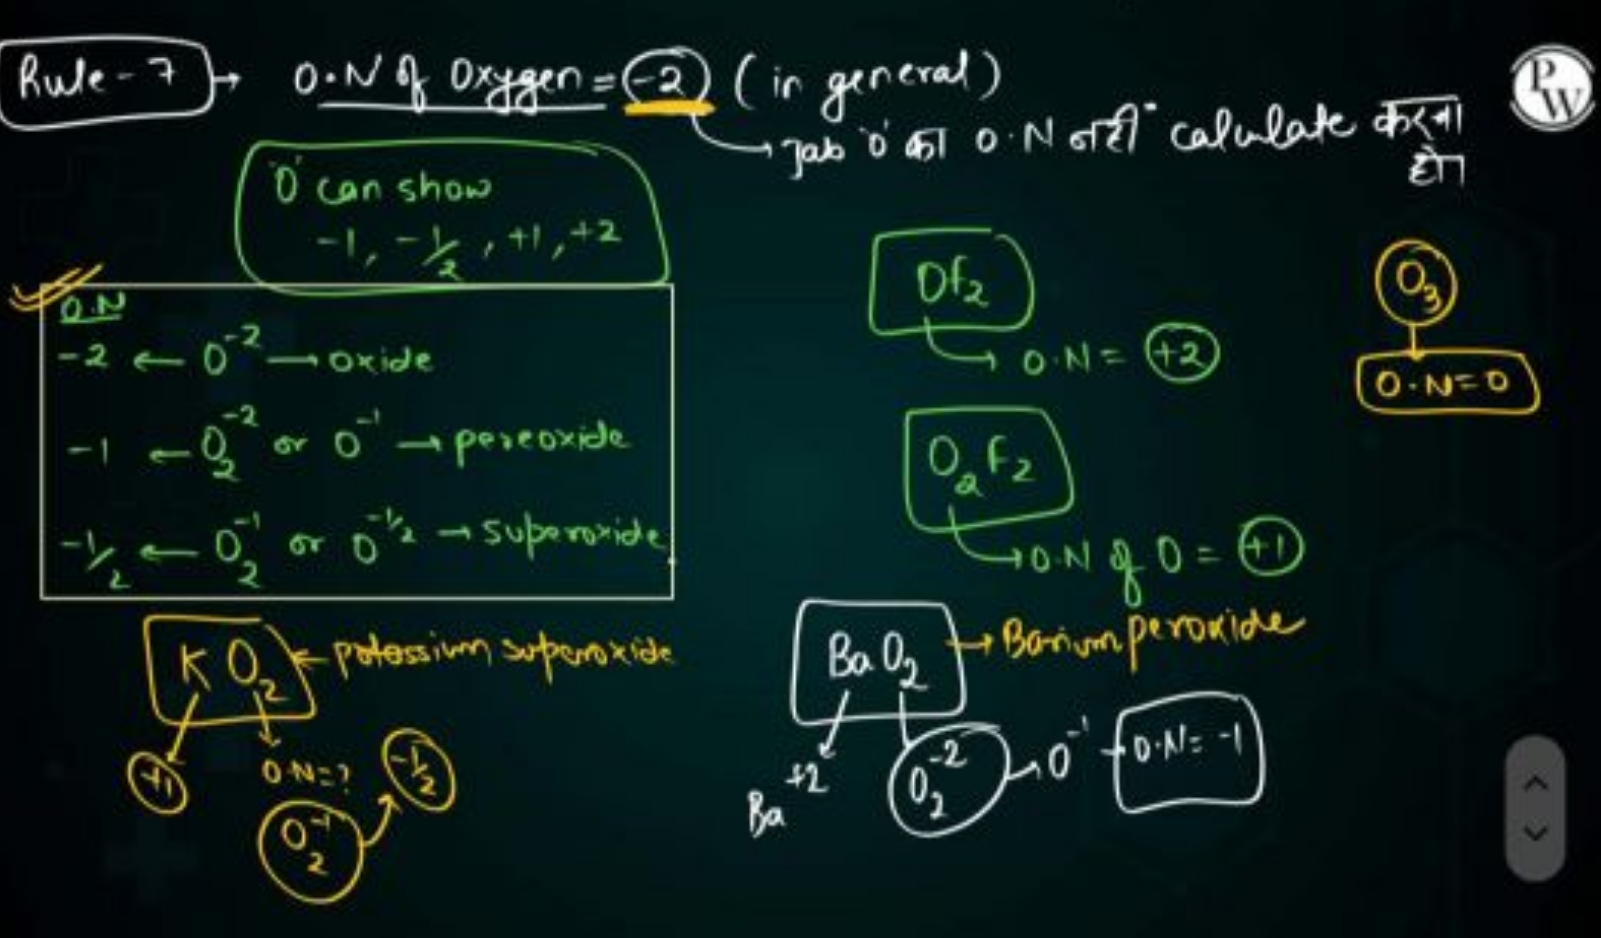 Rule-7 0.N of 0xygen =−2 (in general)
